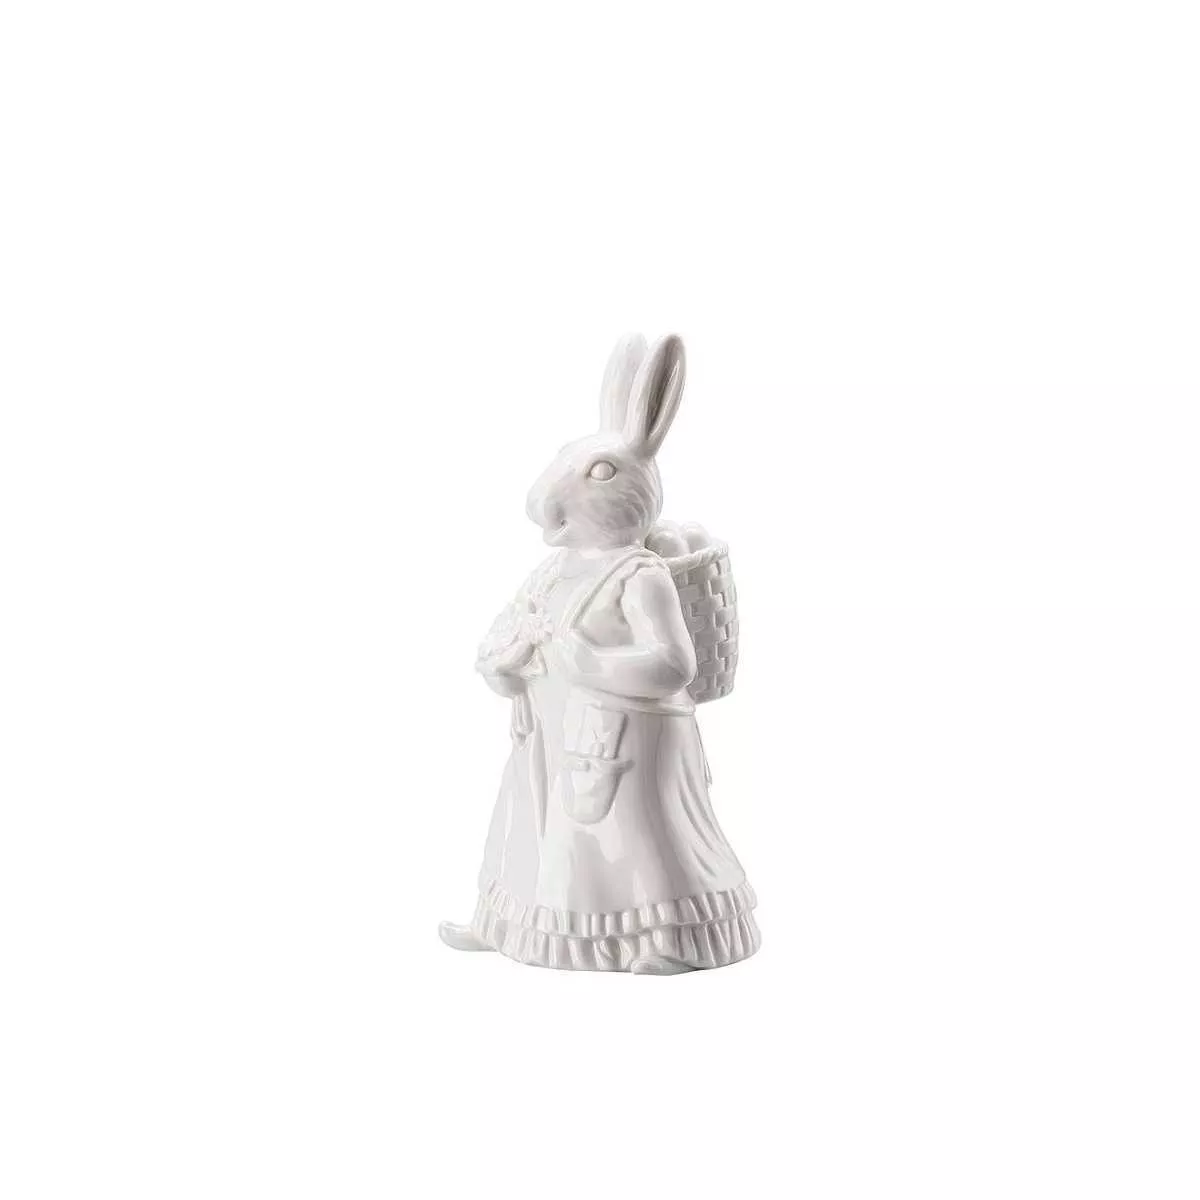 Статуэтка пасхальная «Леди кролик с корзиной» белая Hutschenreuther Hasenfiguren Weiss, высота 13,5 см (02350-800001-88840) - Фото nav 4